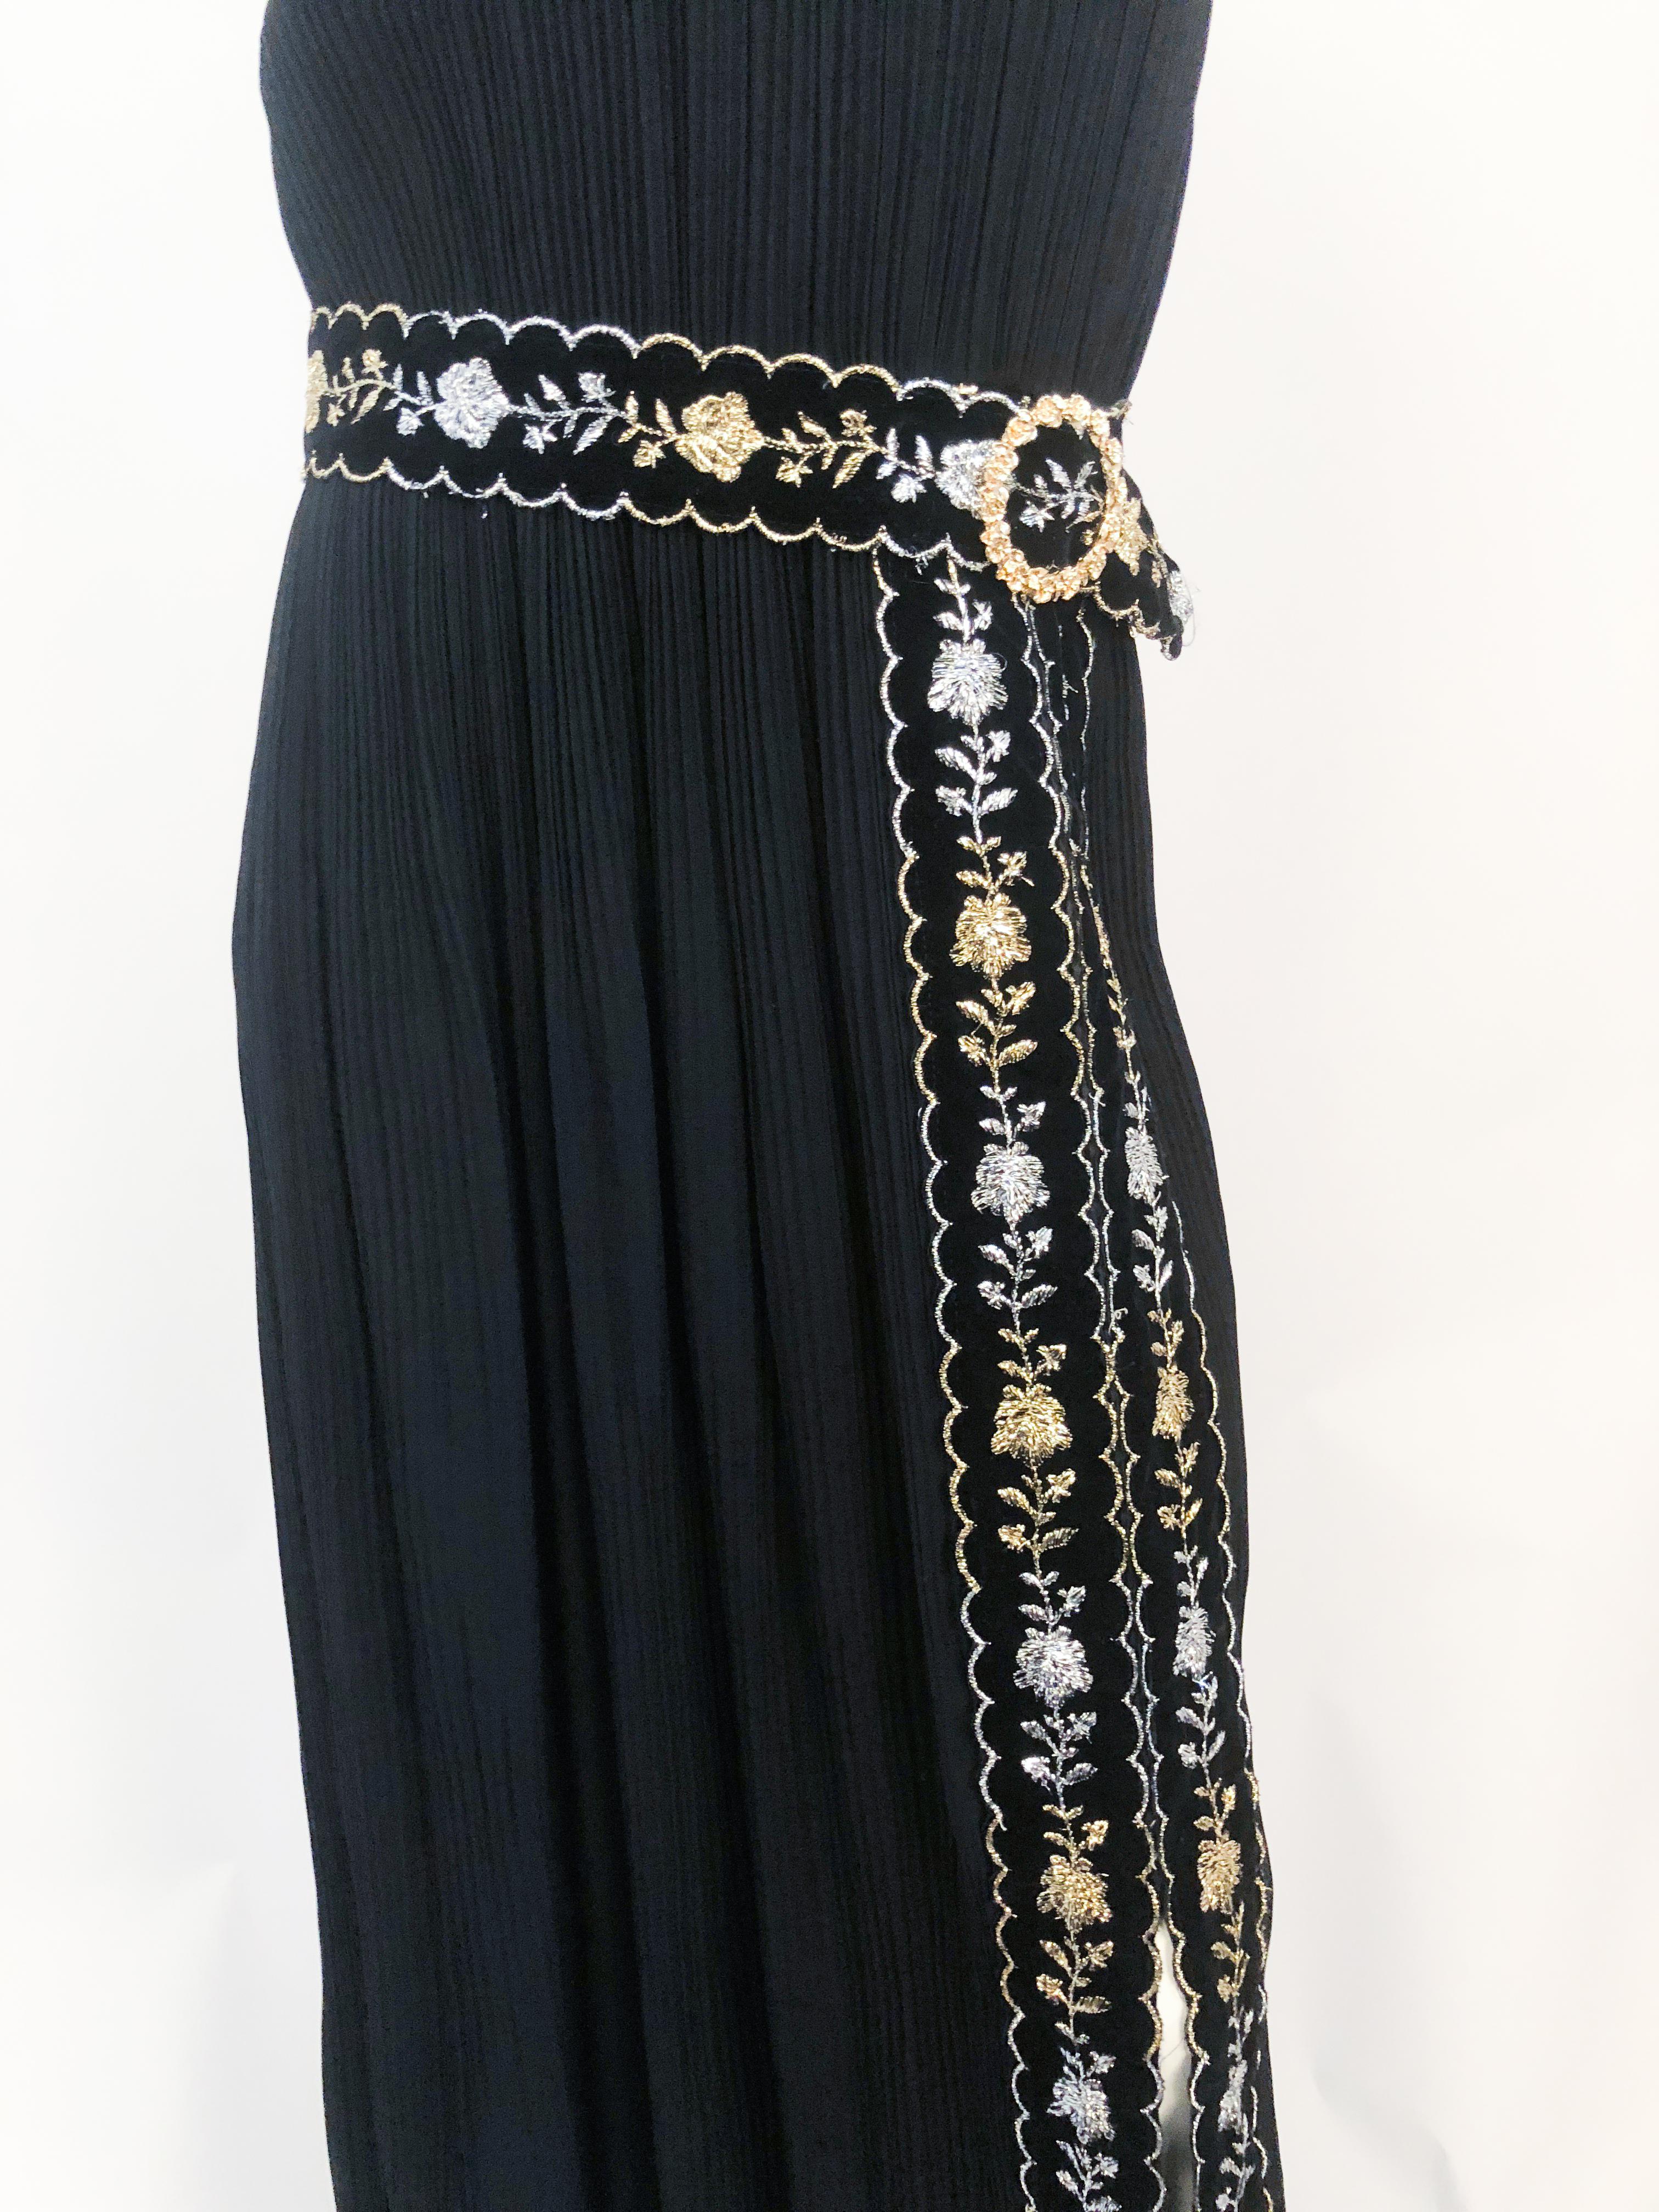 Women's or Men's 1960s Black Pleated Sleeveless Dress with Velvet and Metallic Details